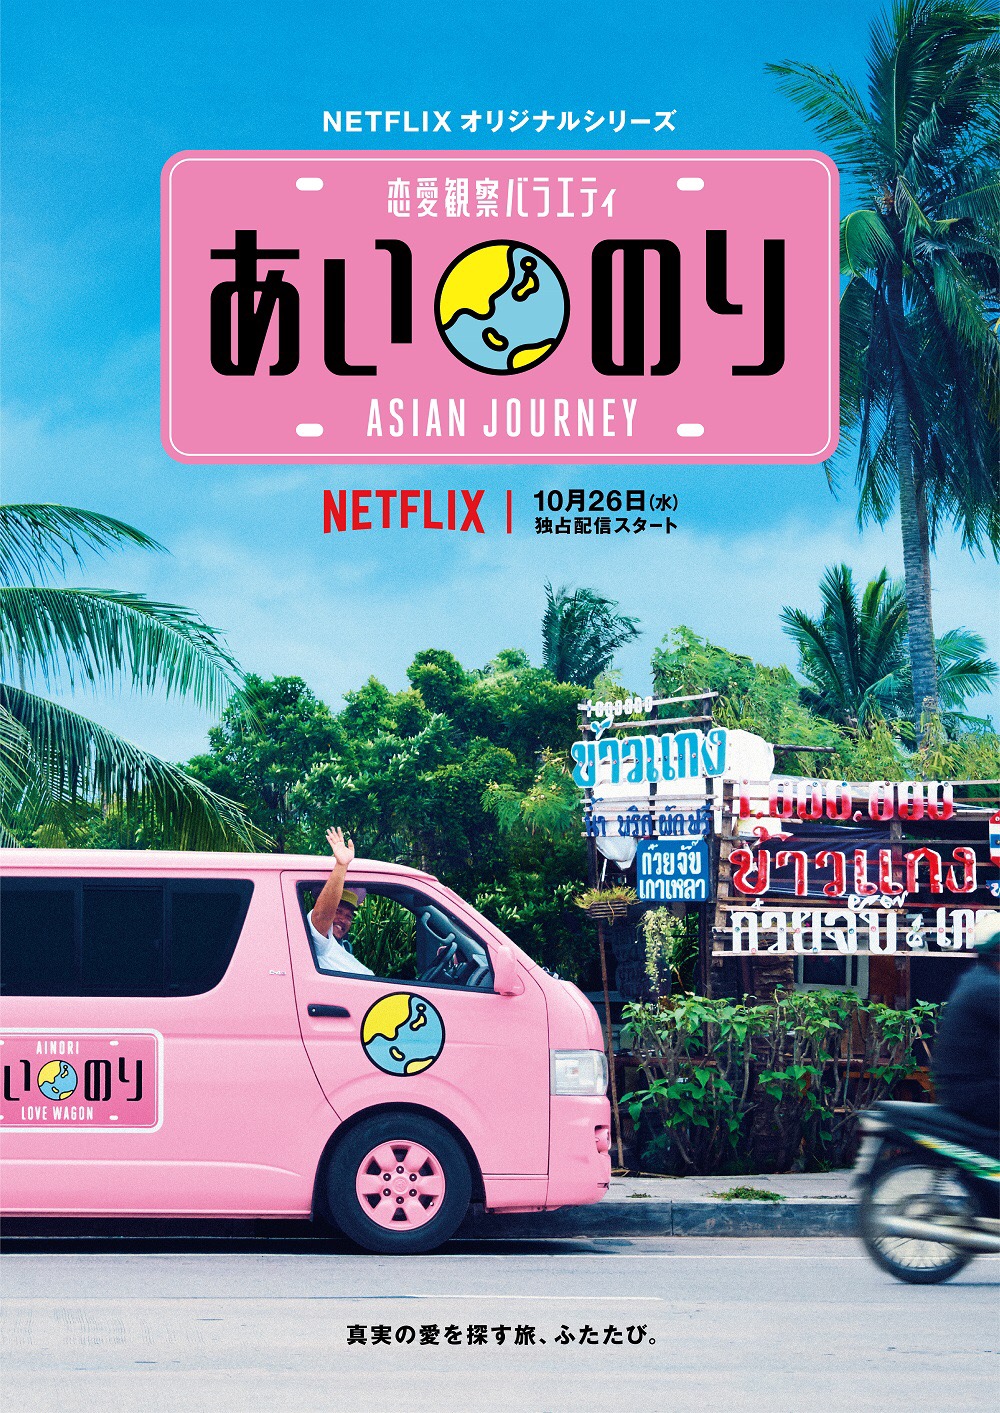 『あいのり : Asian Journey』として、Netflixにて「あいのり」が復活